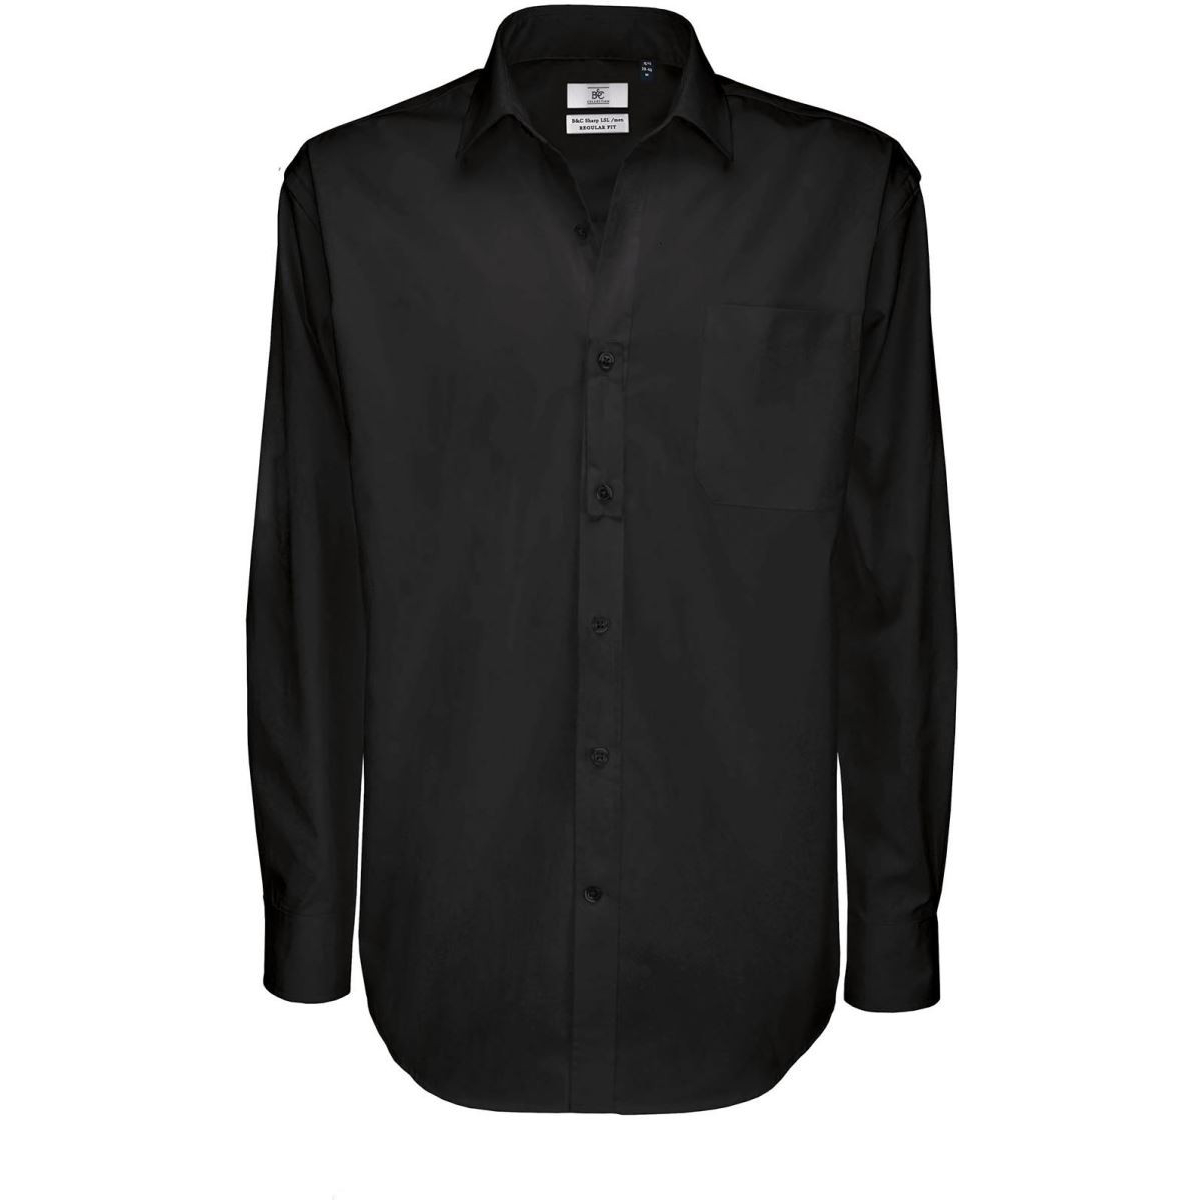 Pánská keprová košile B&C Sharp s dlouhým rukávem - černá, 4XL